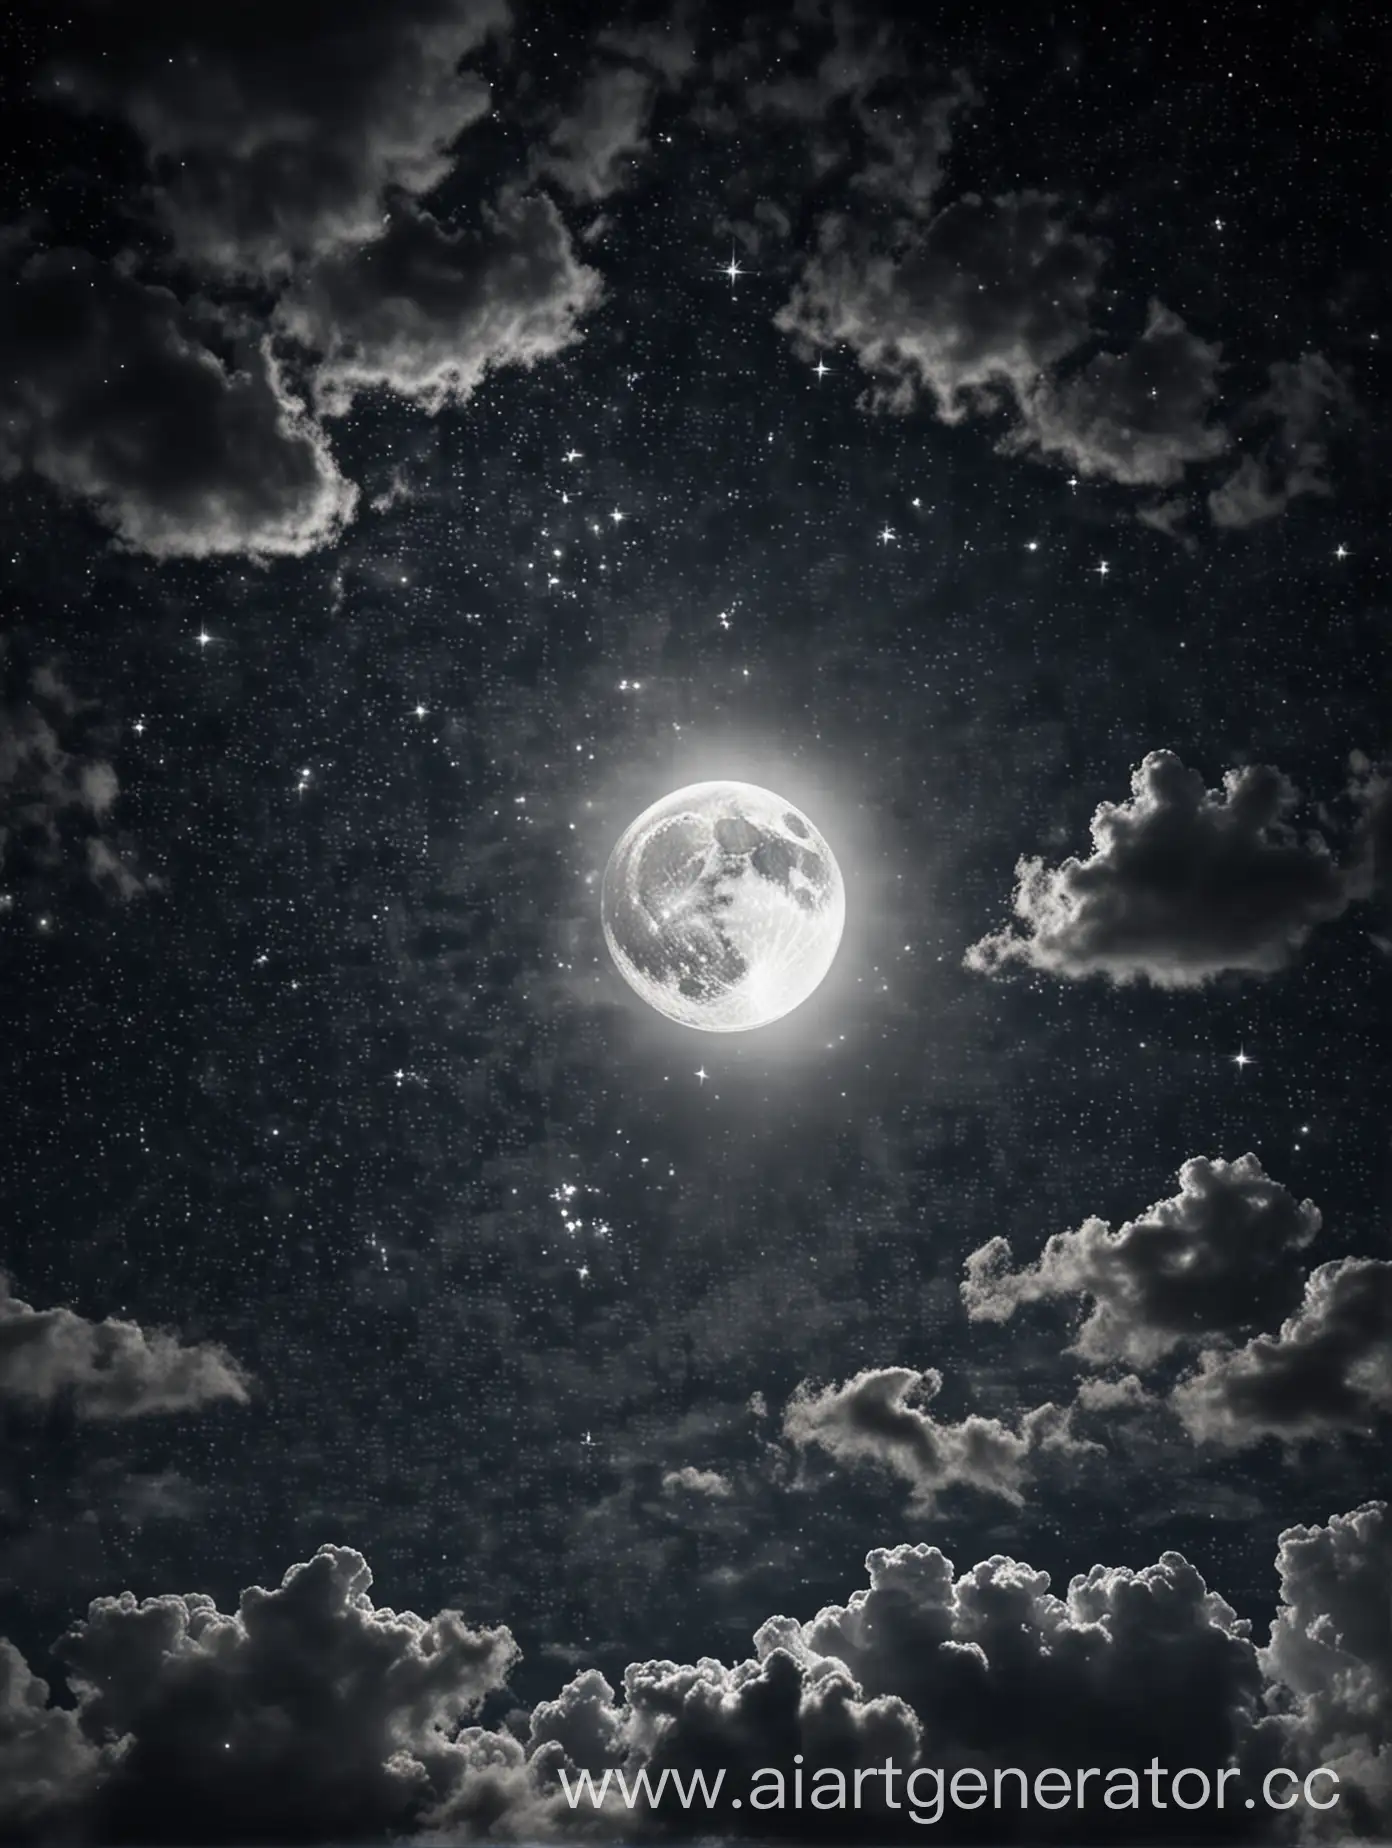 луна с кучей звезд и облаков, фотография должна юыть темной